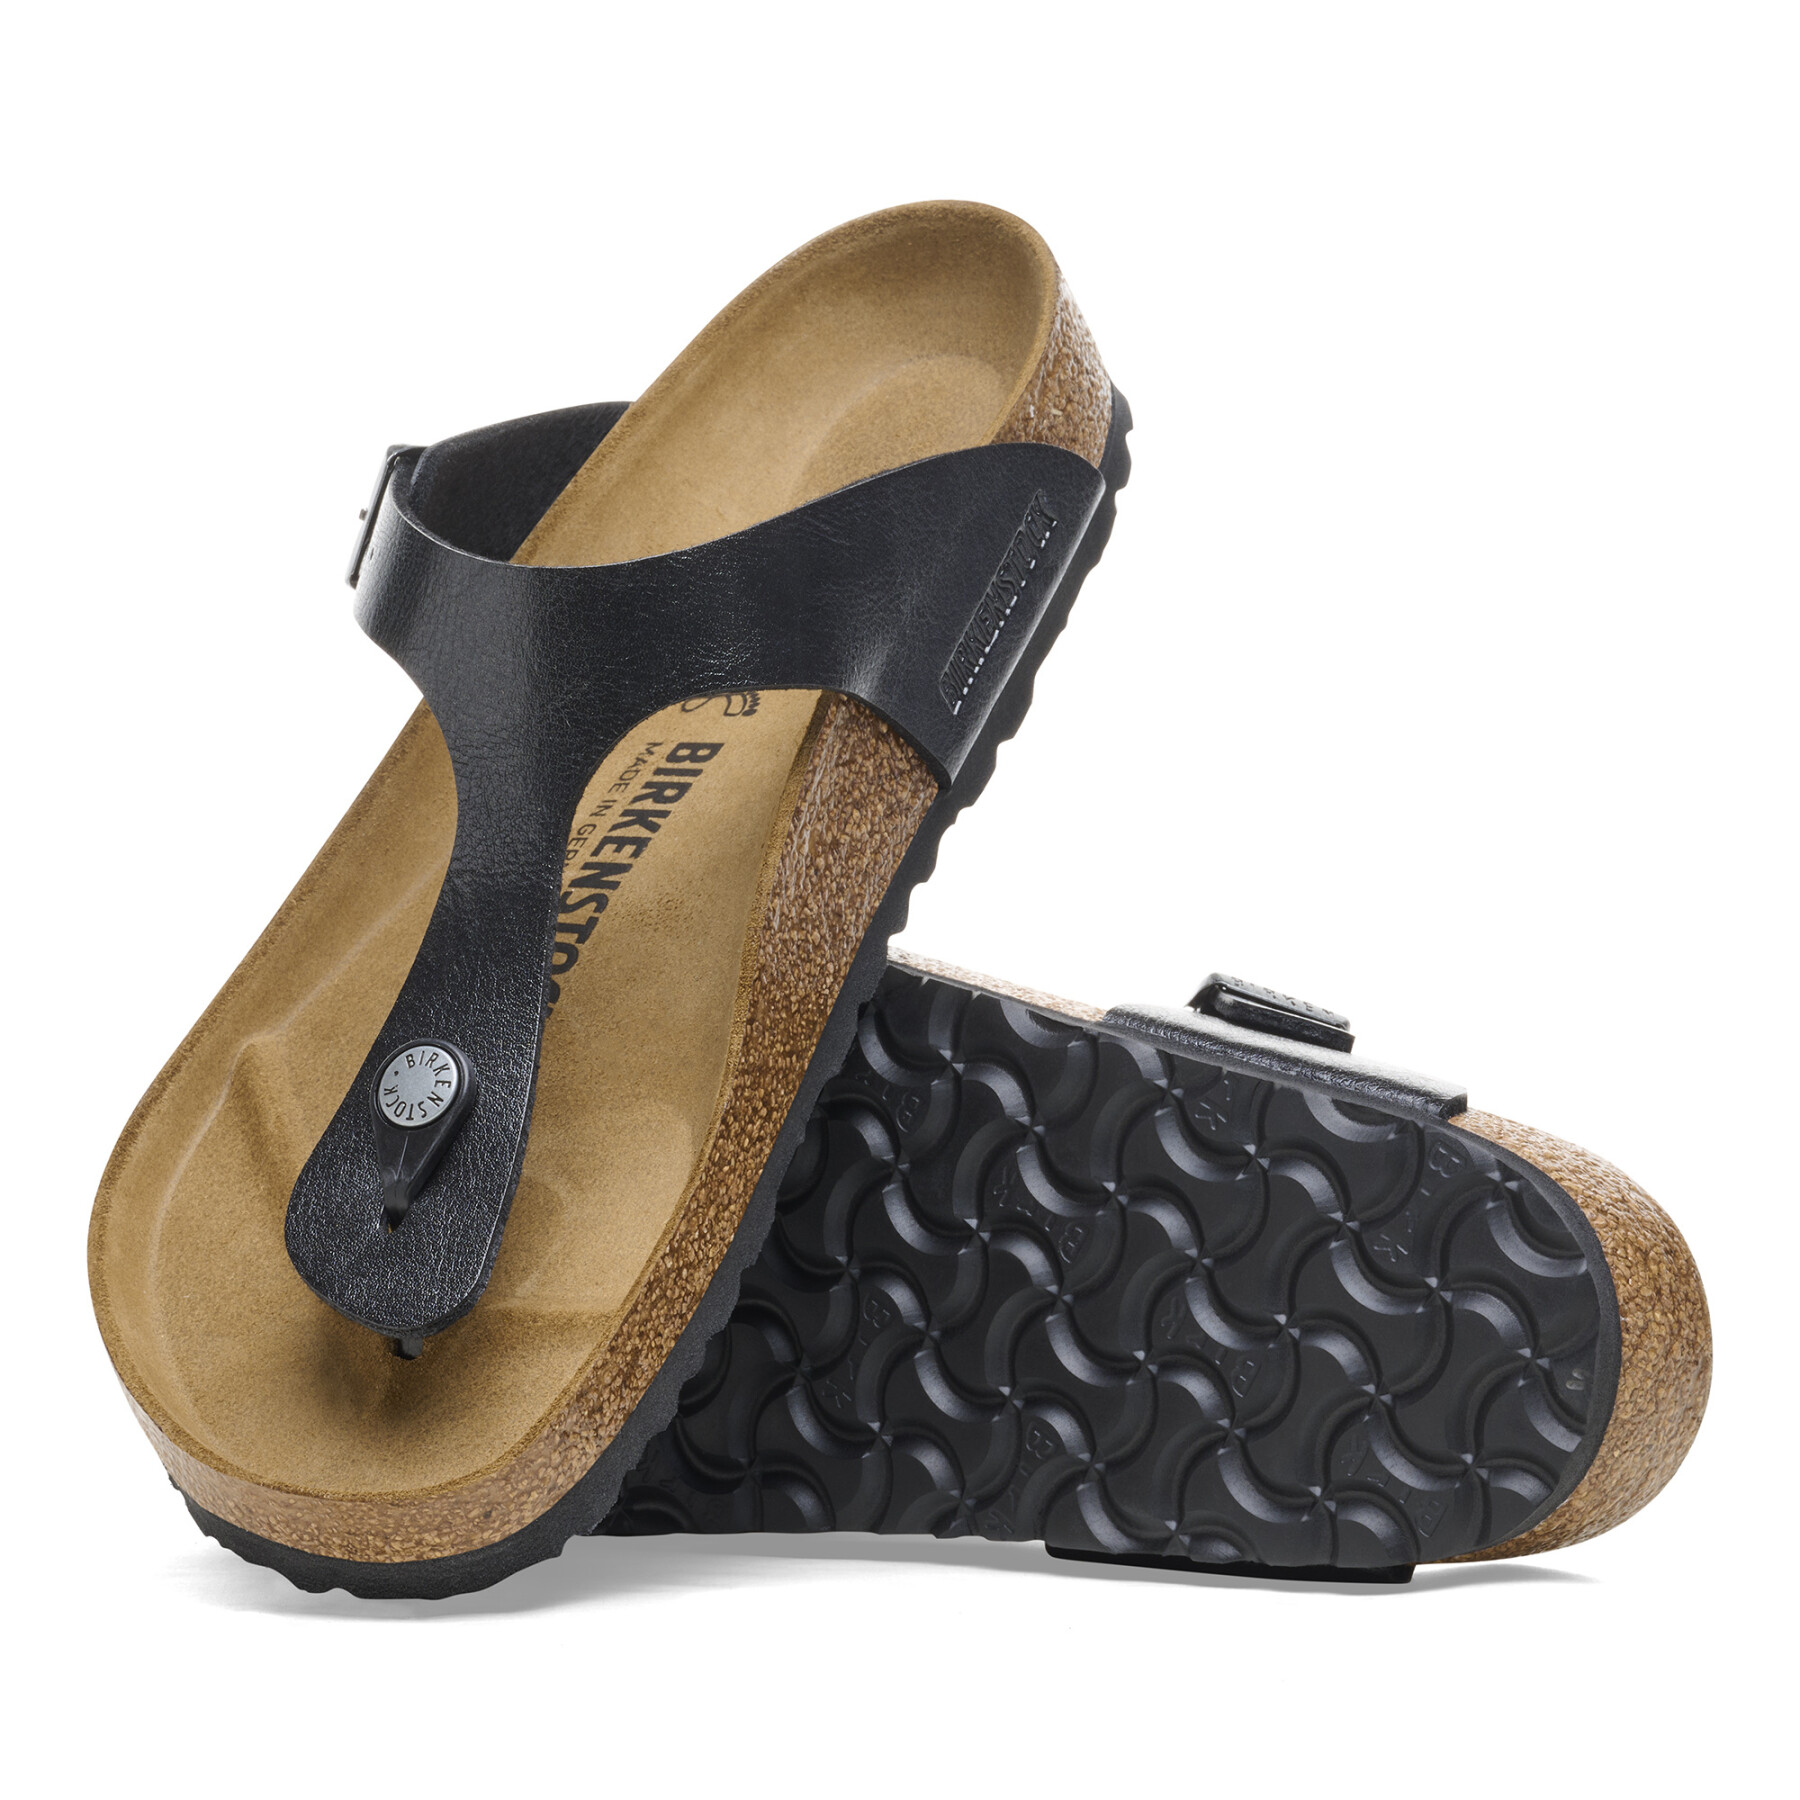 Women's narrow sandals Birkenstock Gizeh Birko-Flor